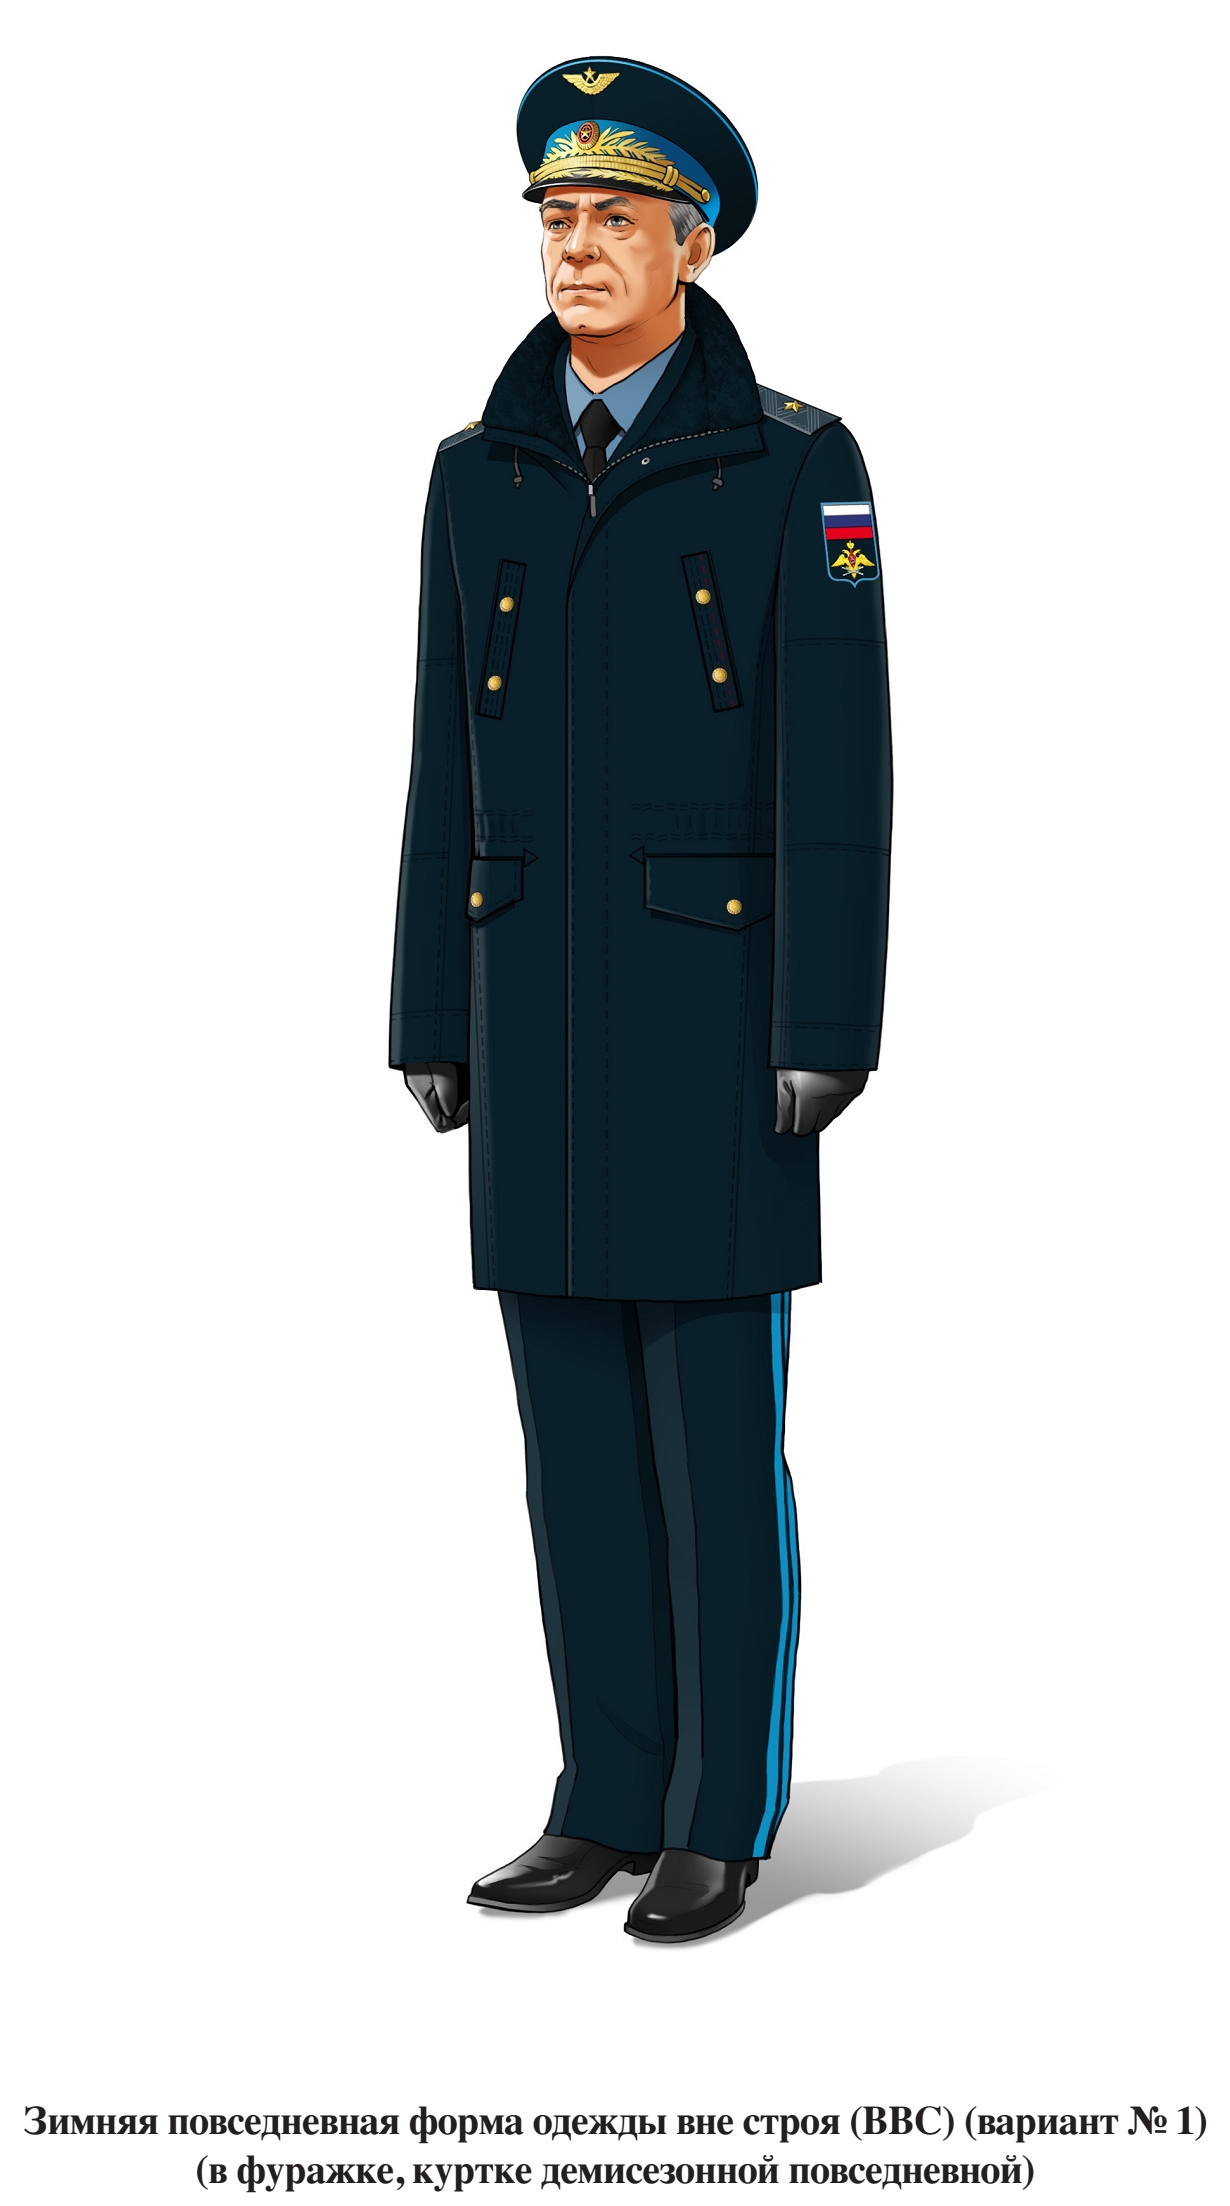 Генерал, зимняя повседневная форма ВВС вне строя